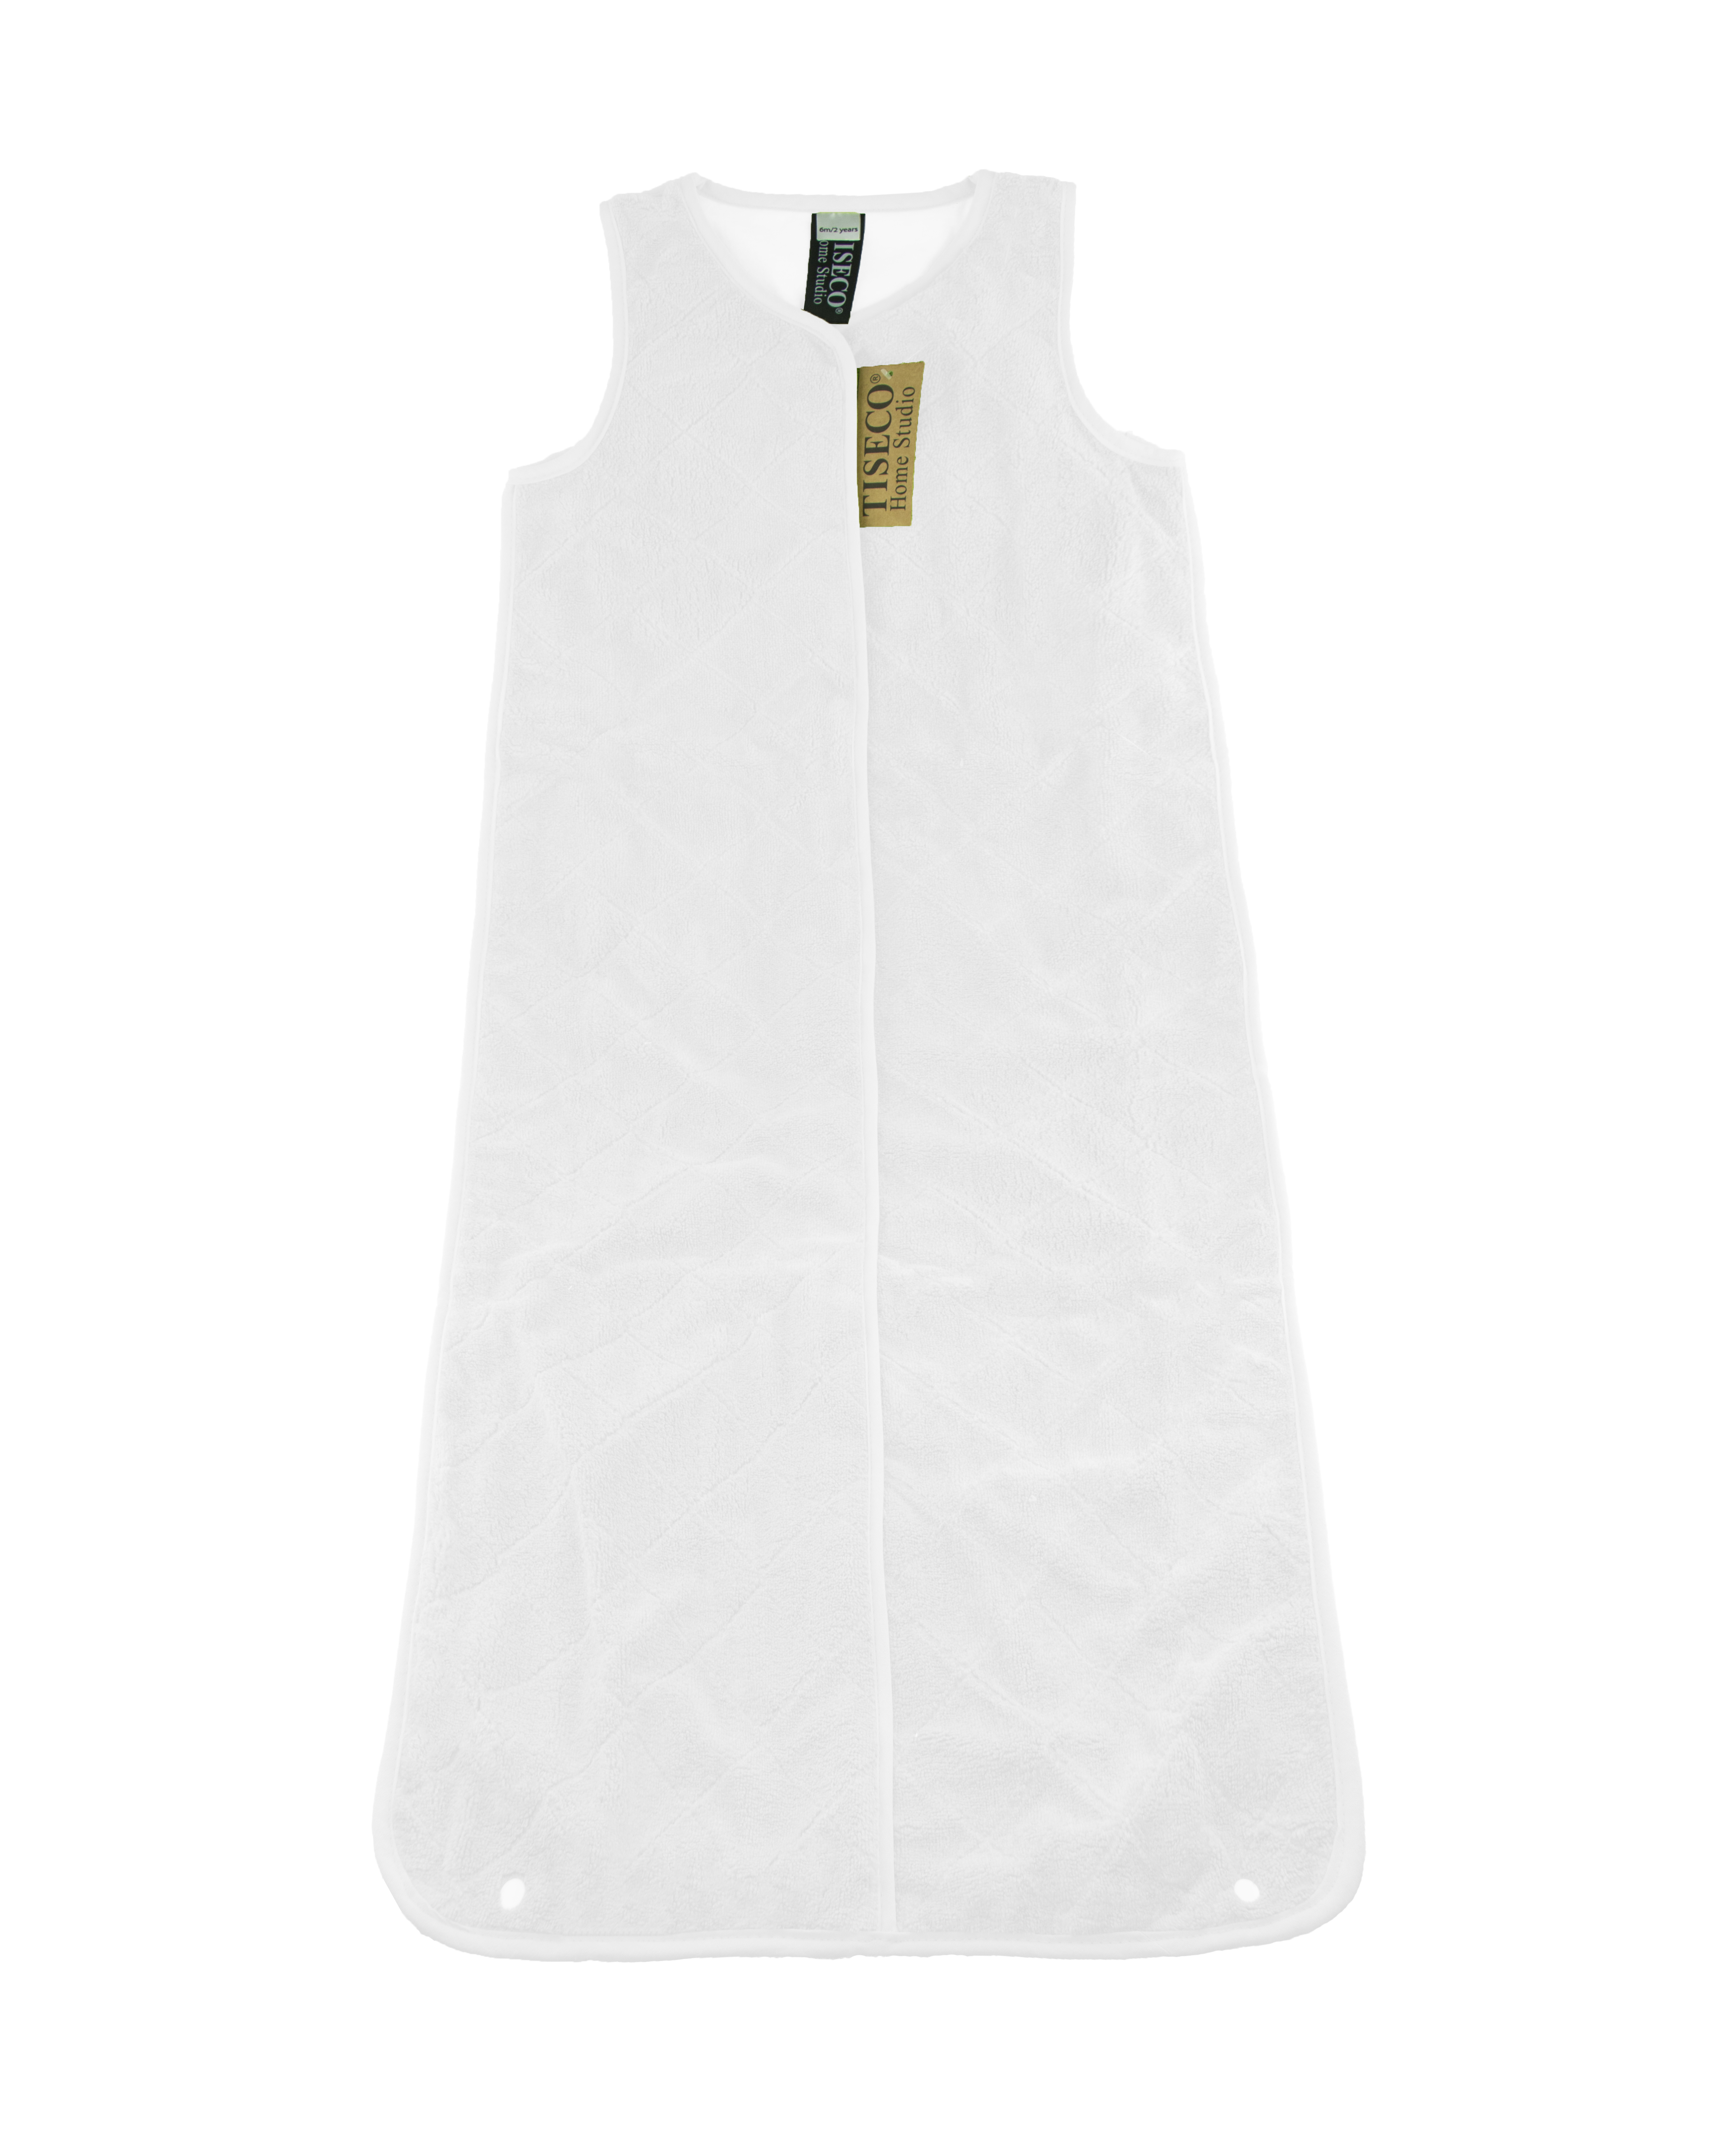 Sac de couchage bébé uni - 50x70-90-110 cm, blanc